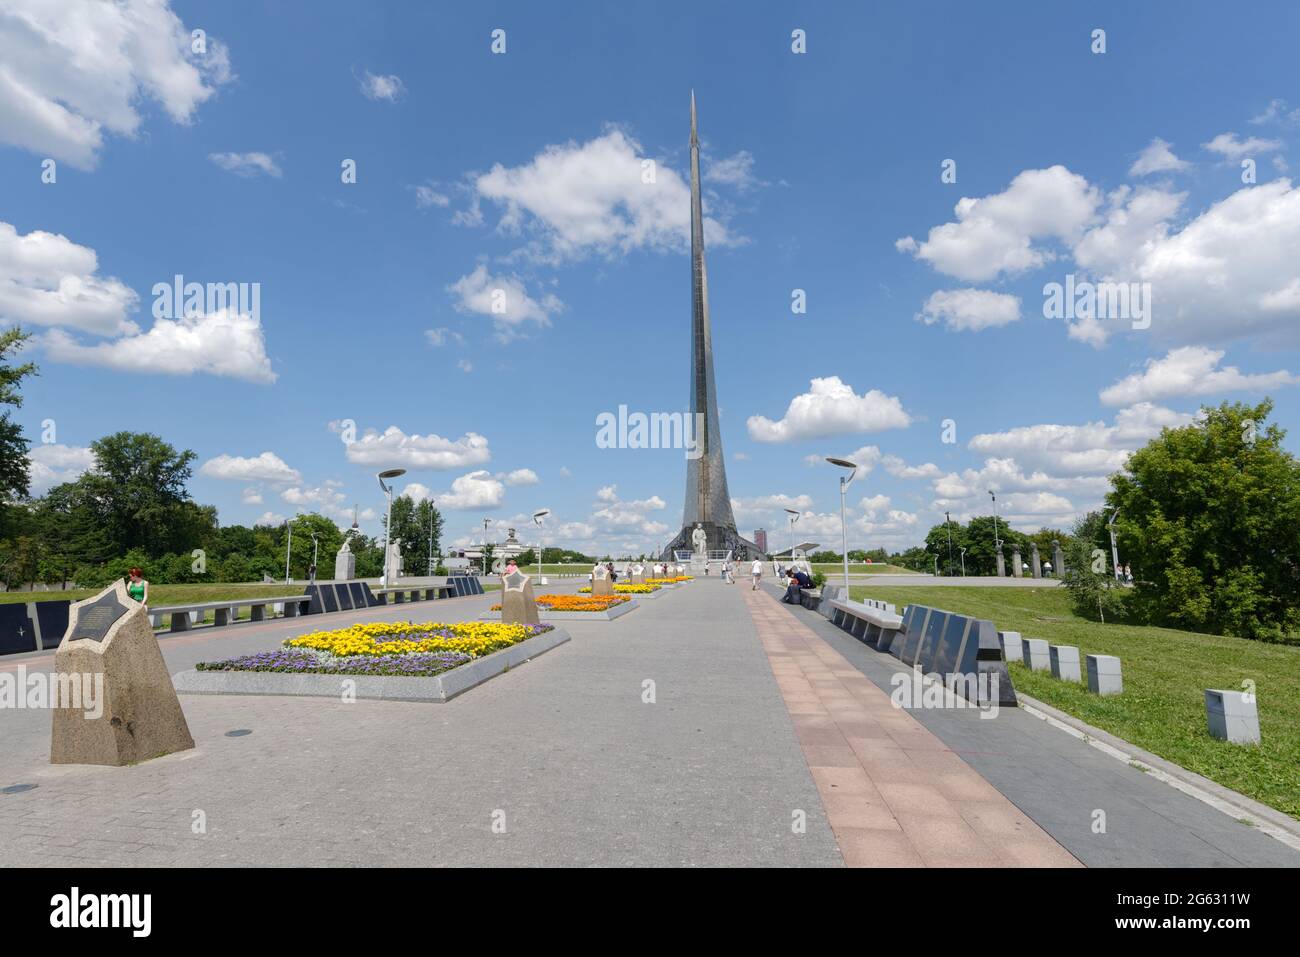 Mosca, Russia - 7 luglio 2014: Monumento al fondatore della cosmonautica Konstantin Eduardovich Tsiolkovsky. Foto Stock